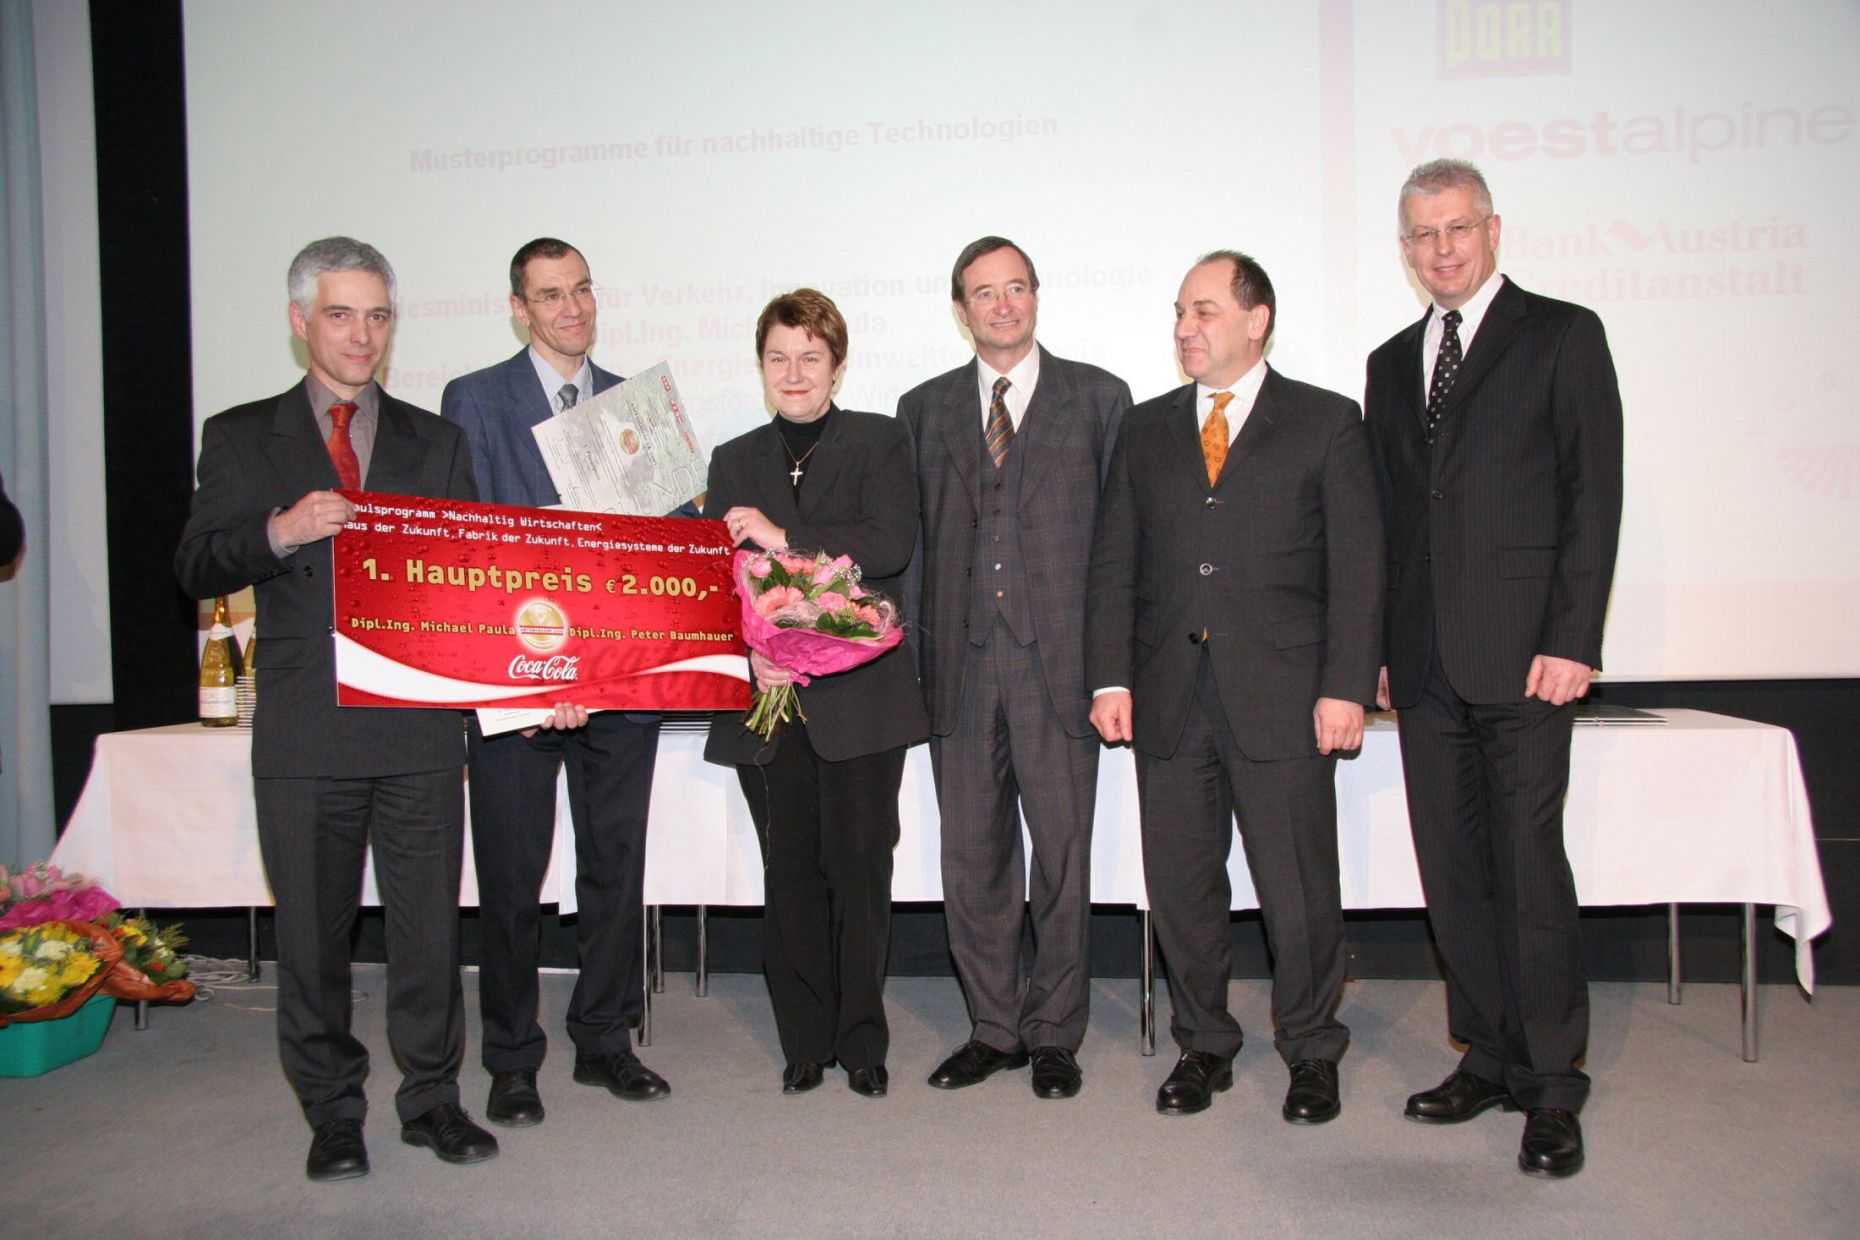 Preisübergabe für den F&E-Bereich Nachhaltig Wirtschaften 'Amtsmanager 2005' am 25.01.2005